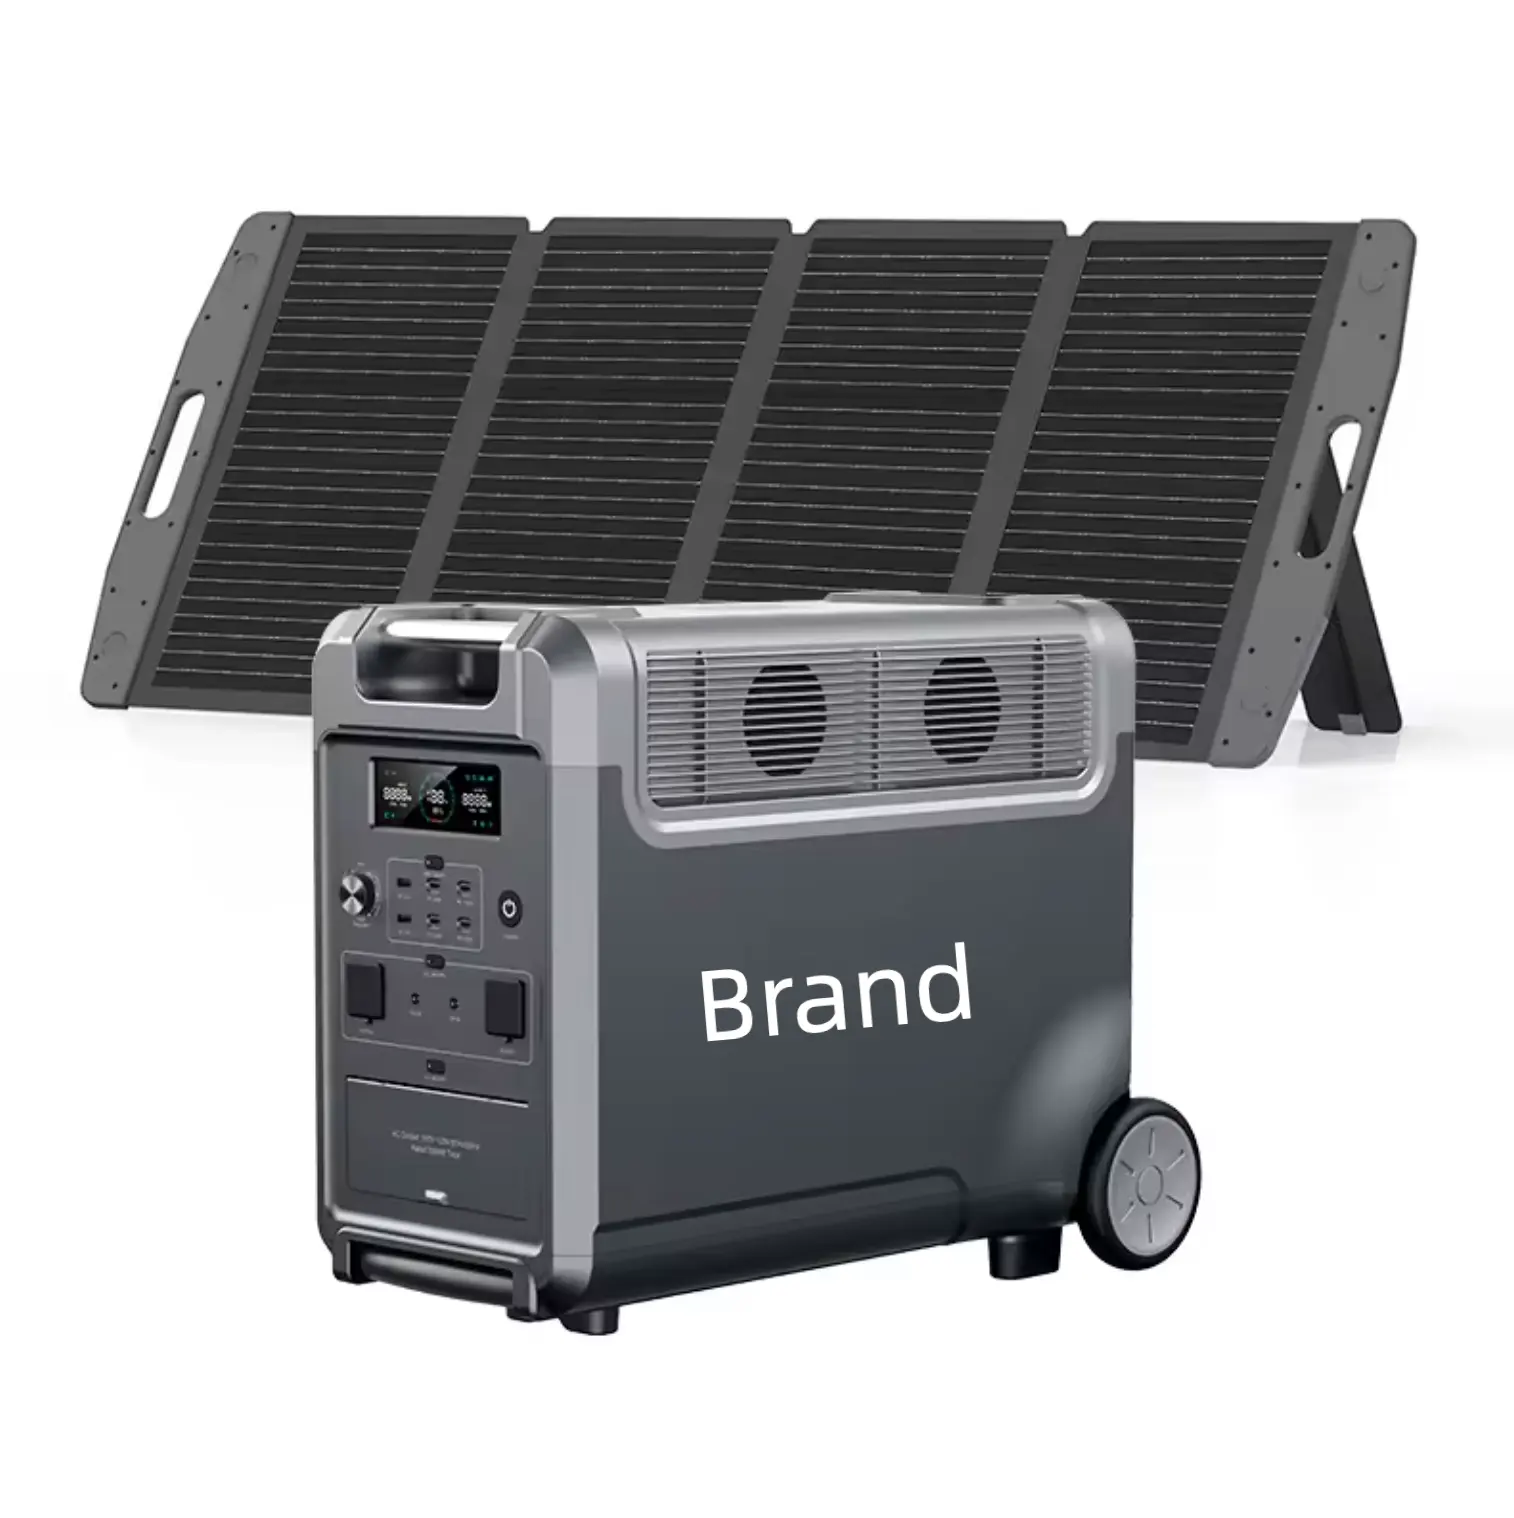 Tragbares Kraftwerk Solarpanel Autostromquelle MPPT reine sinuswelle Taschenlampe externe Batterie ferngesteuertes Zigarrenfeuerzeug